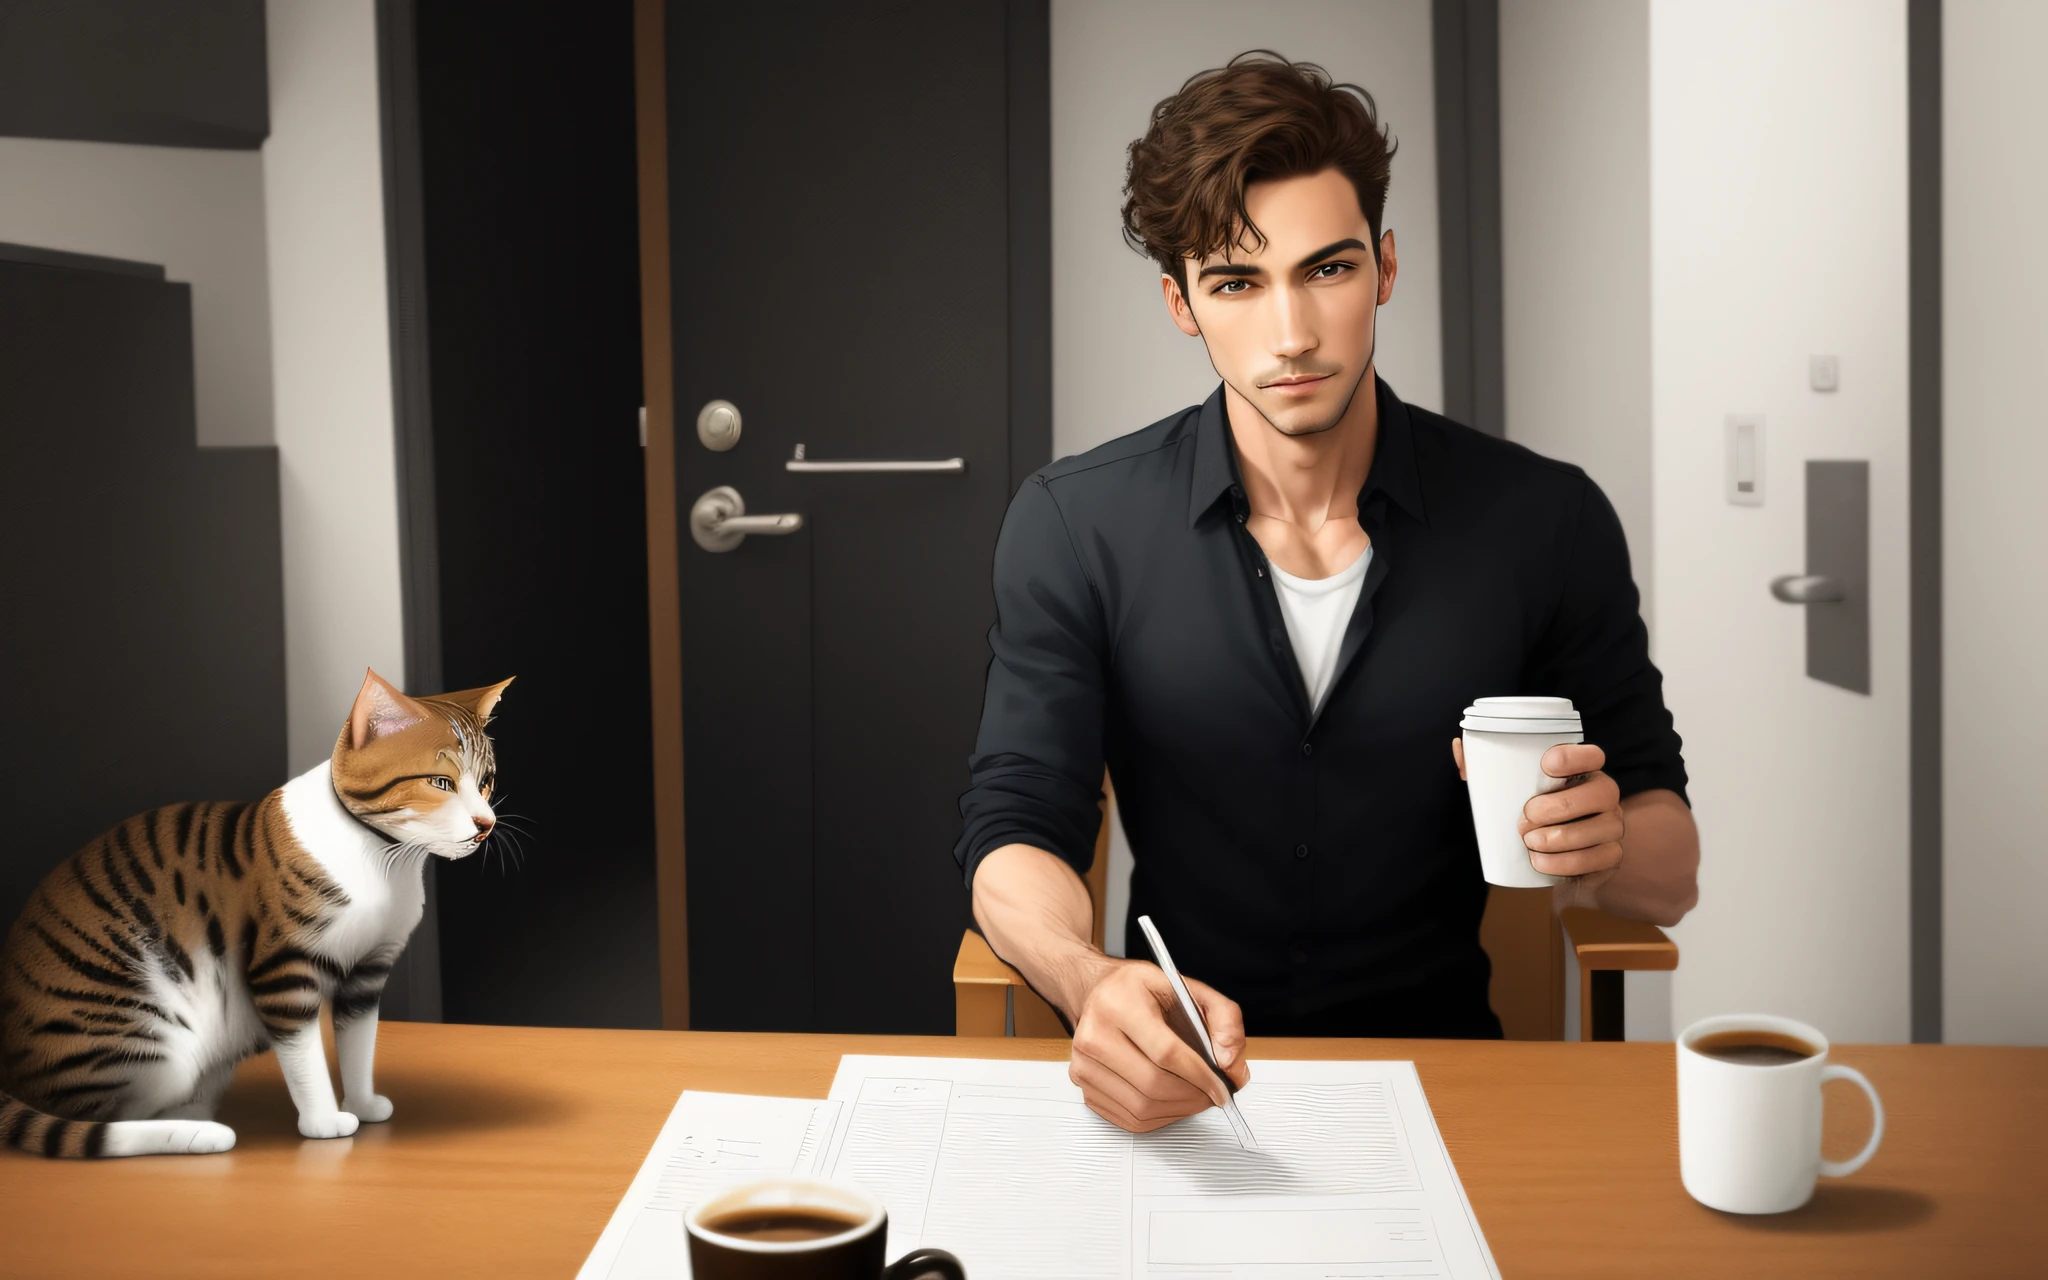 똑바로 걷는 전신 남자,  커피 한 잔을 들고, 사람과 같은 방향으로 가는 고양이, 만화 스타일,  그냥 남자야. 상세한 사실적인 실제 이미지.